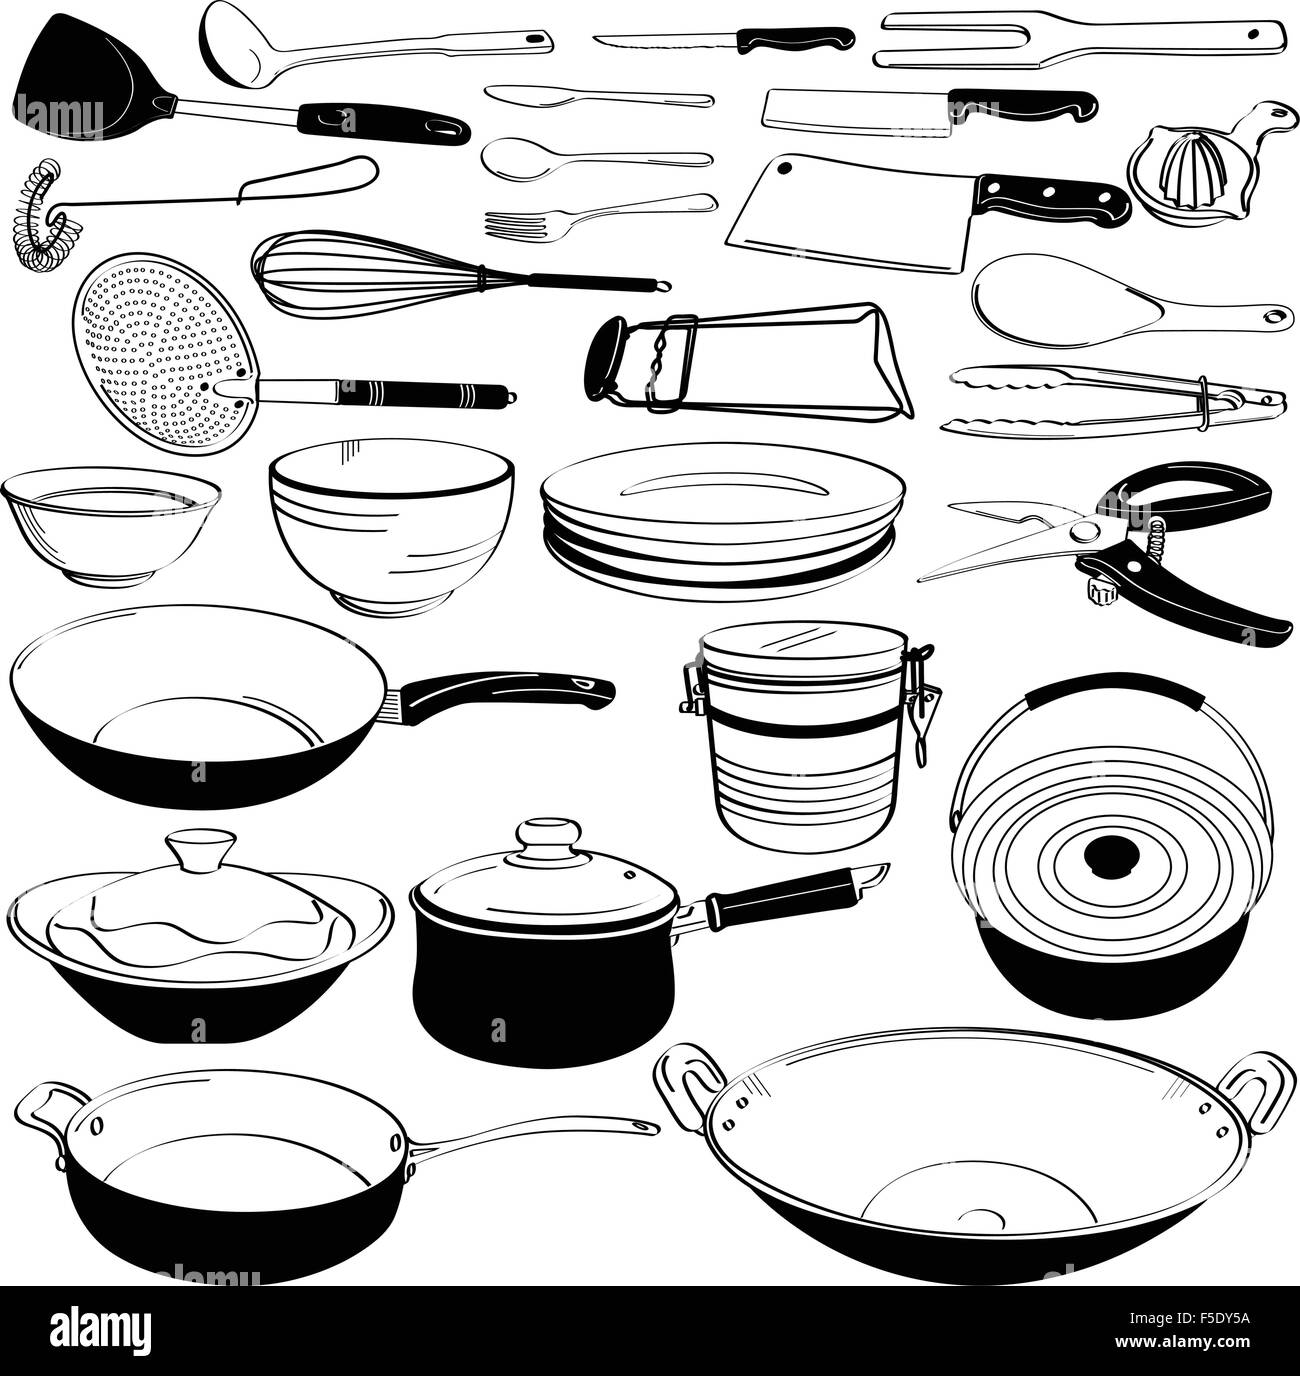 Werkzeug-Utensil Küchenausstattung Doodle Zeichnung Skizze Stock Vektor